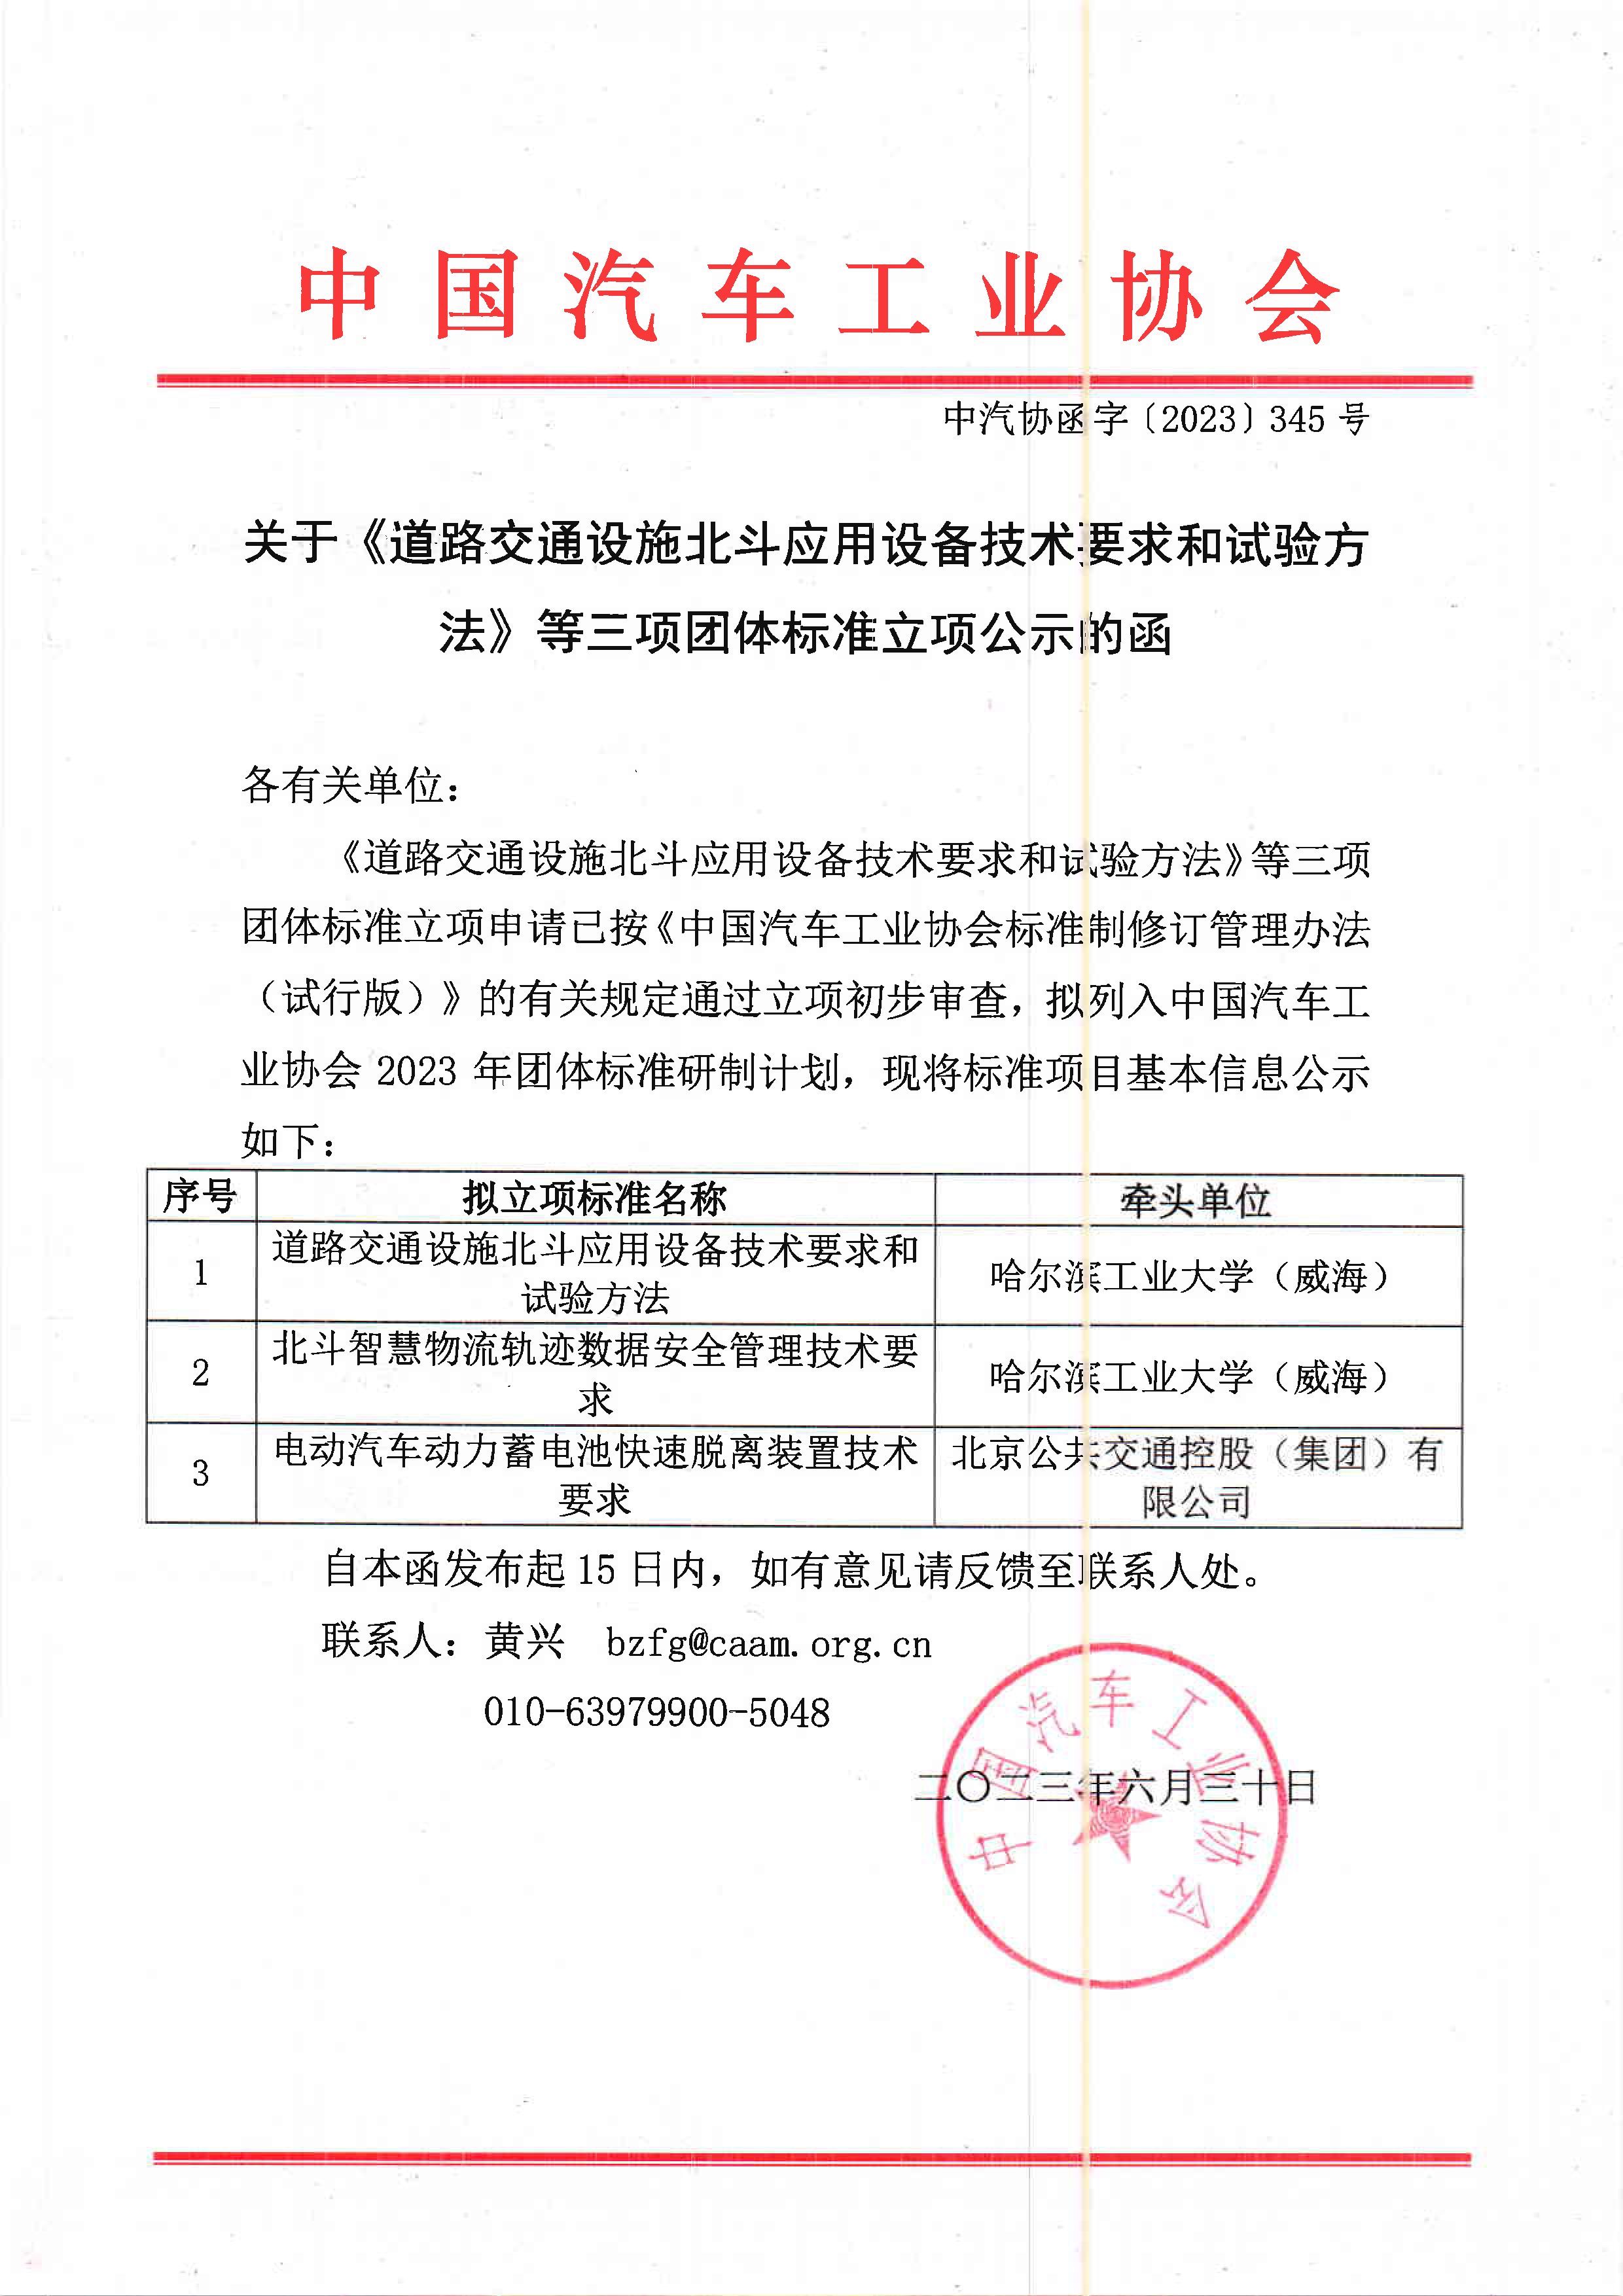 中汽协函字〔2023〕345号--中国汽车工业协会关于《道路交通设施北斗应用设备技术要求和试验方法》等三项团体标准立项公示的函.png